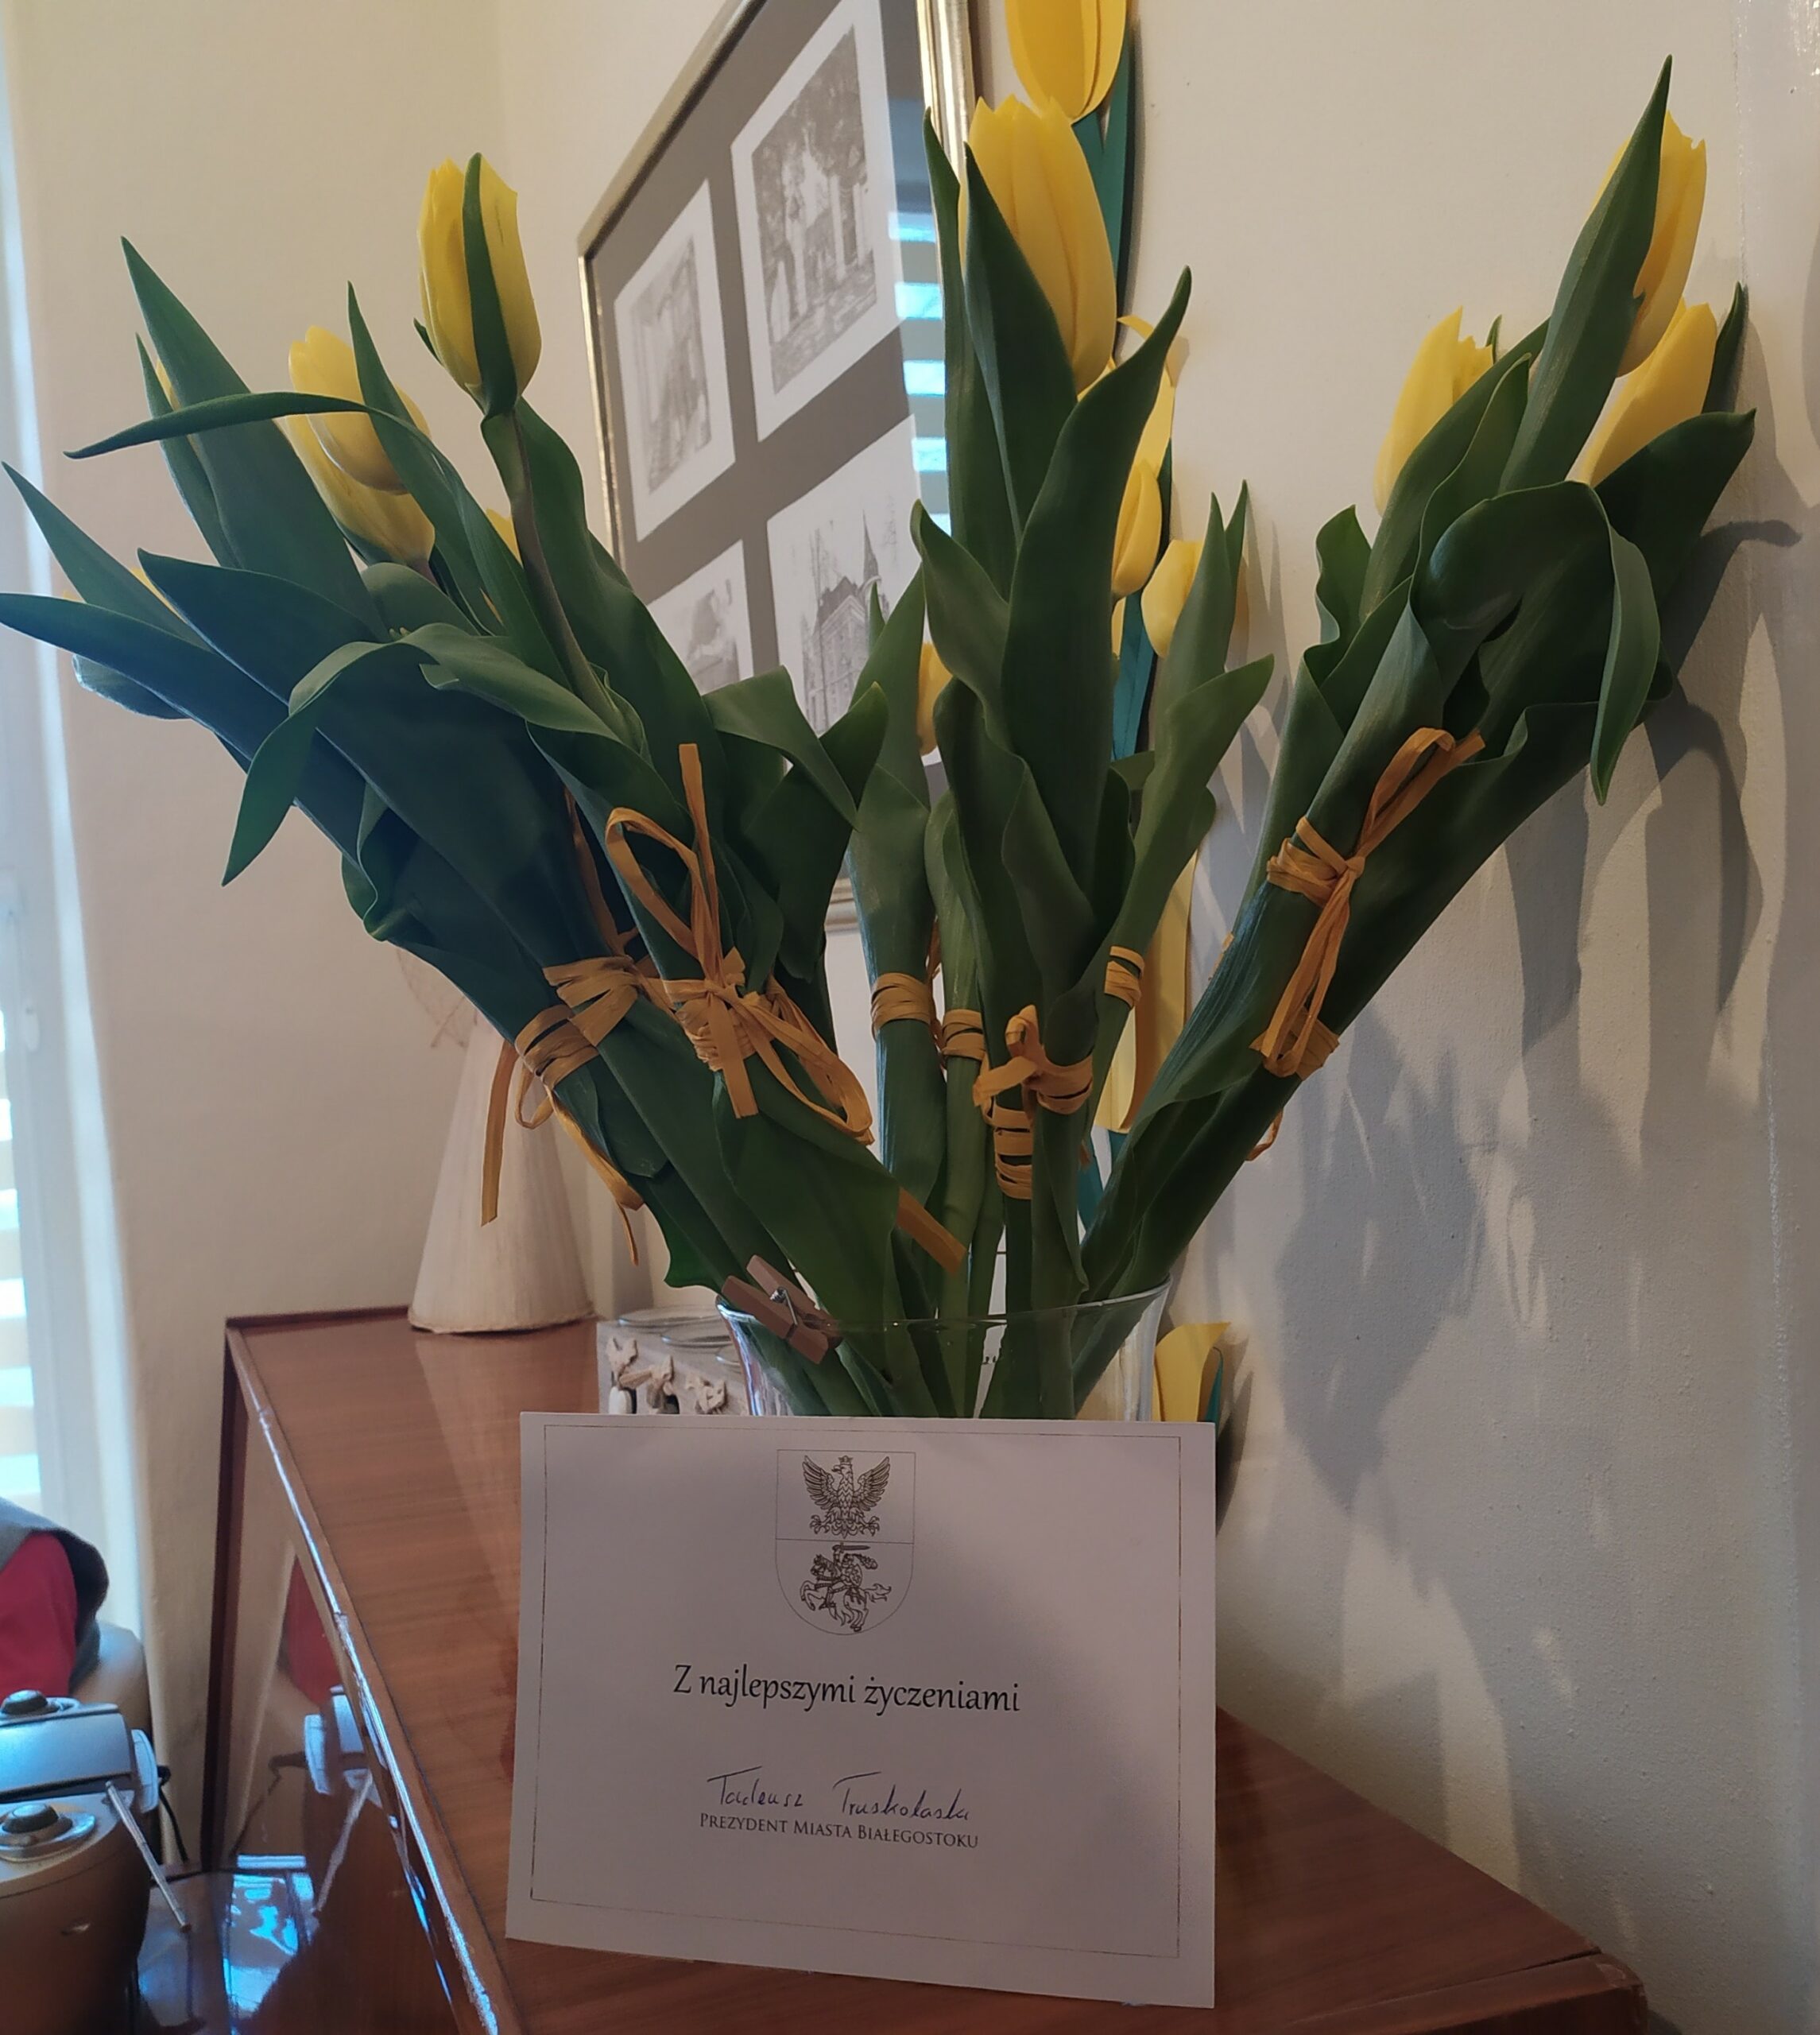 Bukiet żółtych tulipanów w szklanym wazonie i kartka z napisem: "Z najlepszymi życzeniami Tadeusz Truskolaski Prezydent Miasta Białegostoku"